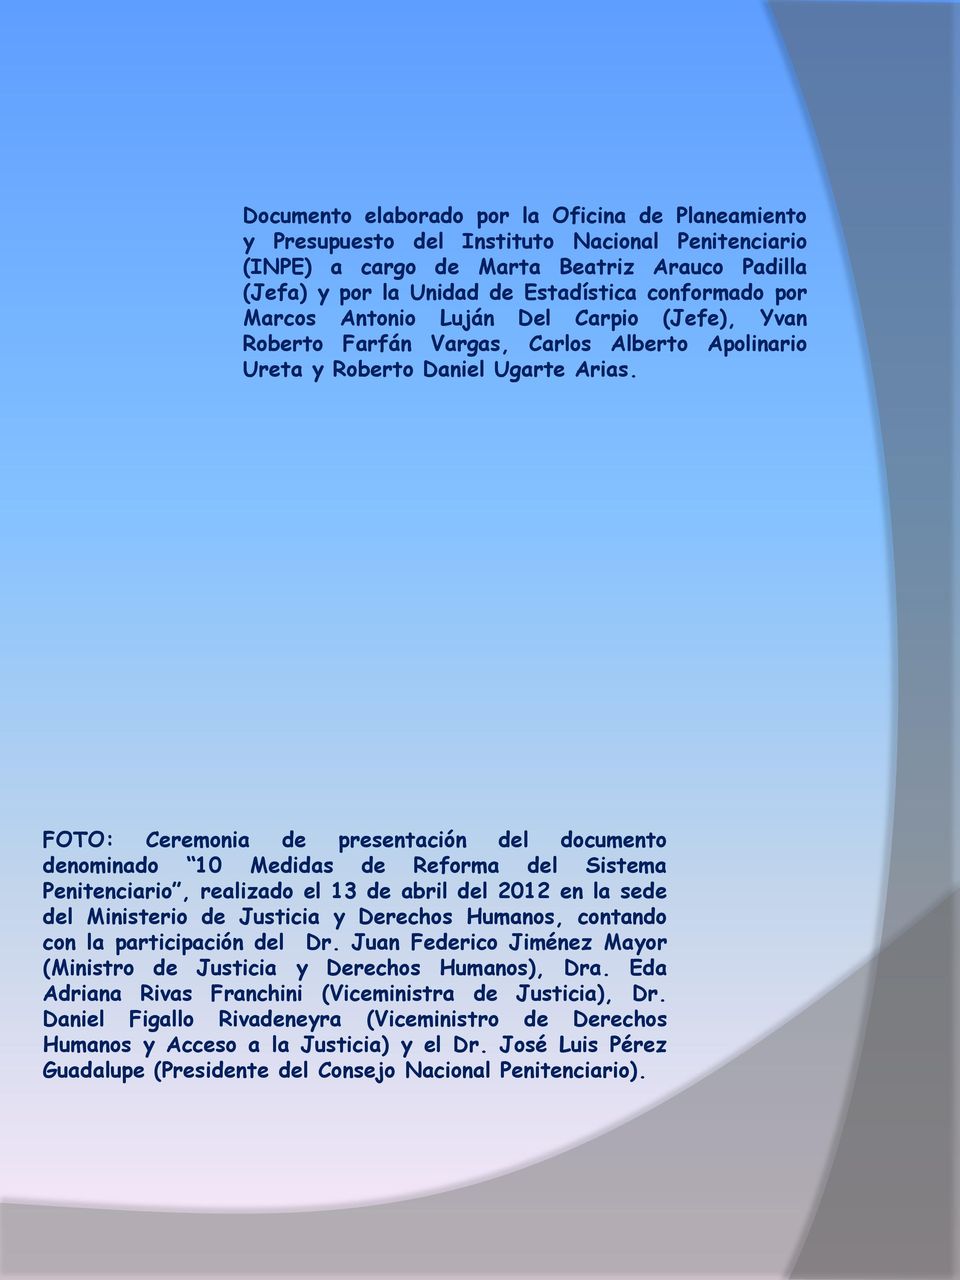 FOTO: Ceremonia de presentación del documento denominado 10 Medidas de Reforma del Sistema Penitenciario, realizado el 13 de abril del 2012 en la sede del Ministerio de Justicia y Derechos Humanos,